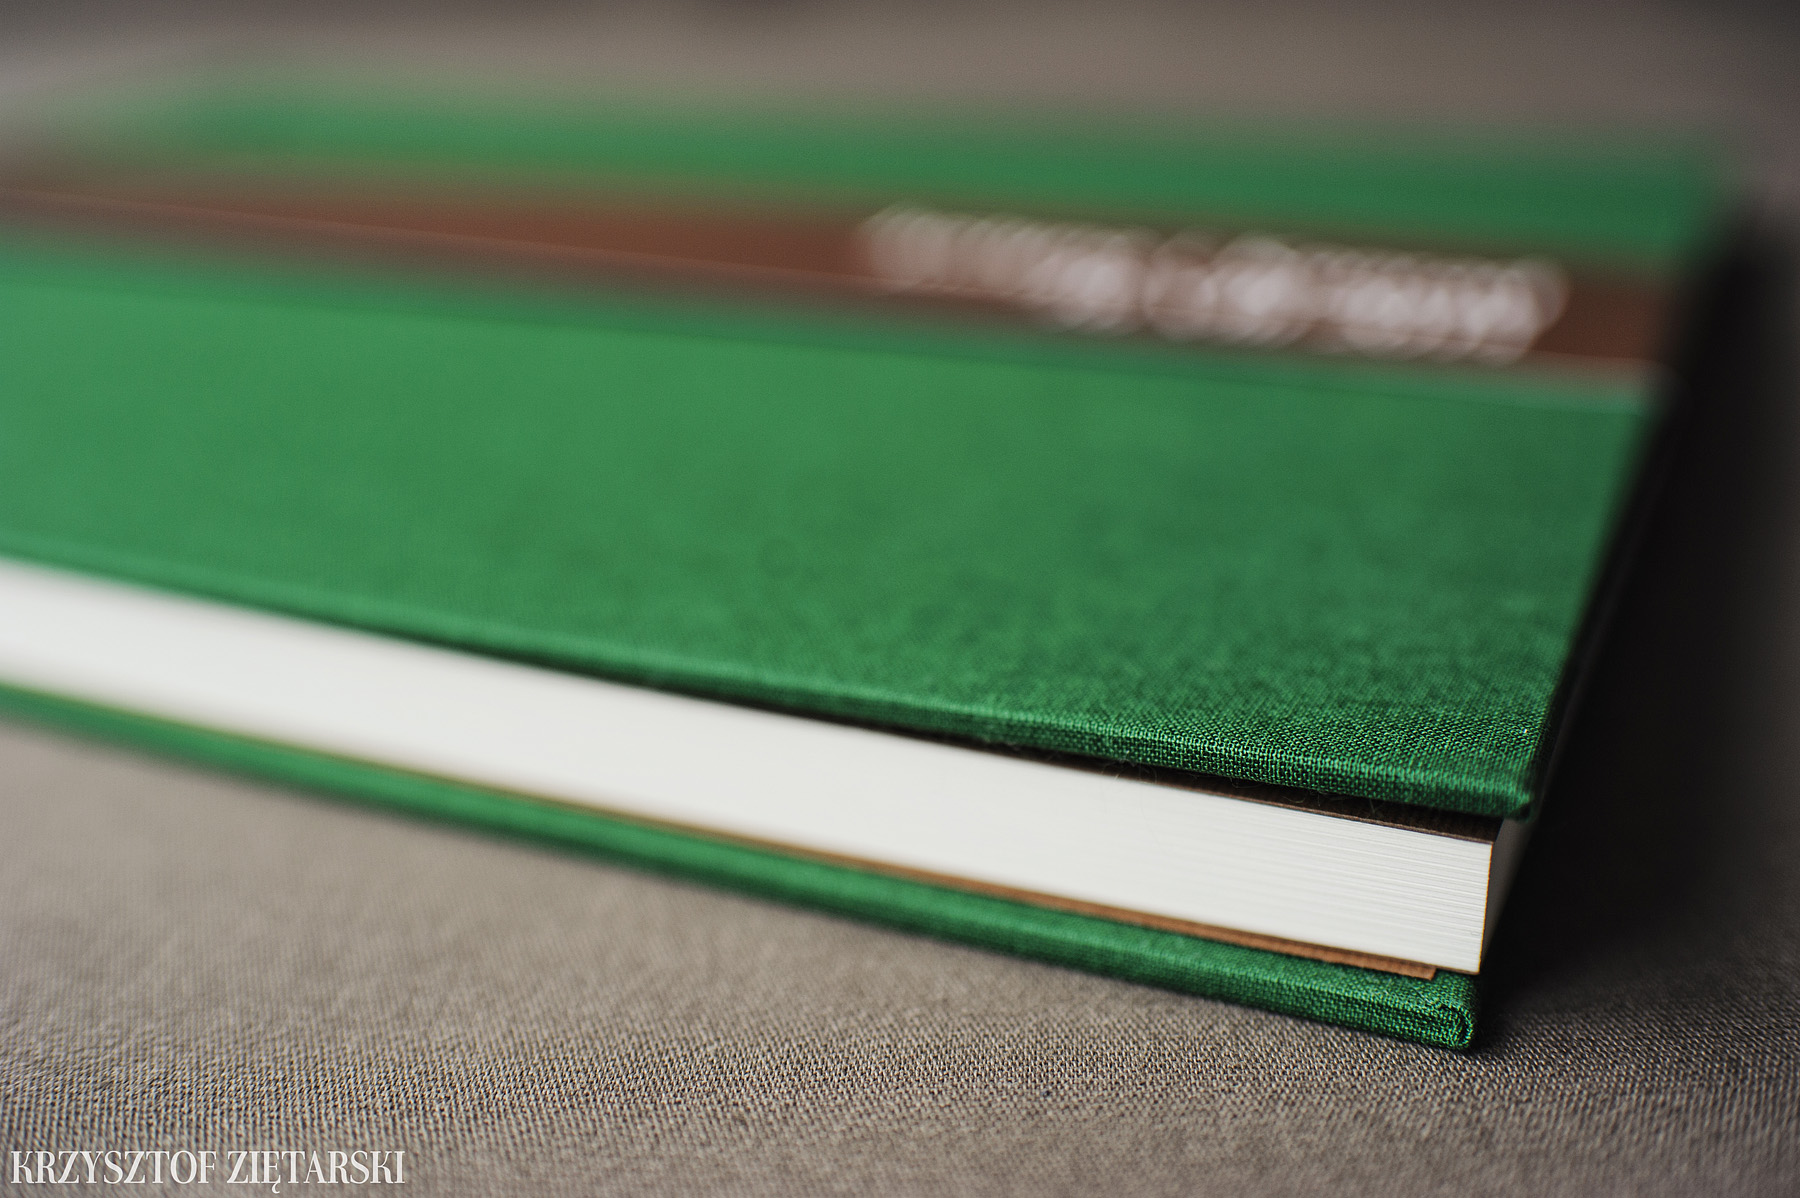 KrukBook 40x30cm, papier kremowy niepowlekany, zielone płótno C25 i tabakowa wyklejka - zdjęcia, przykłady